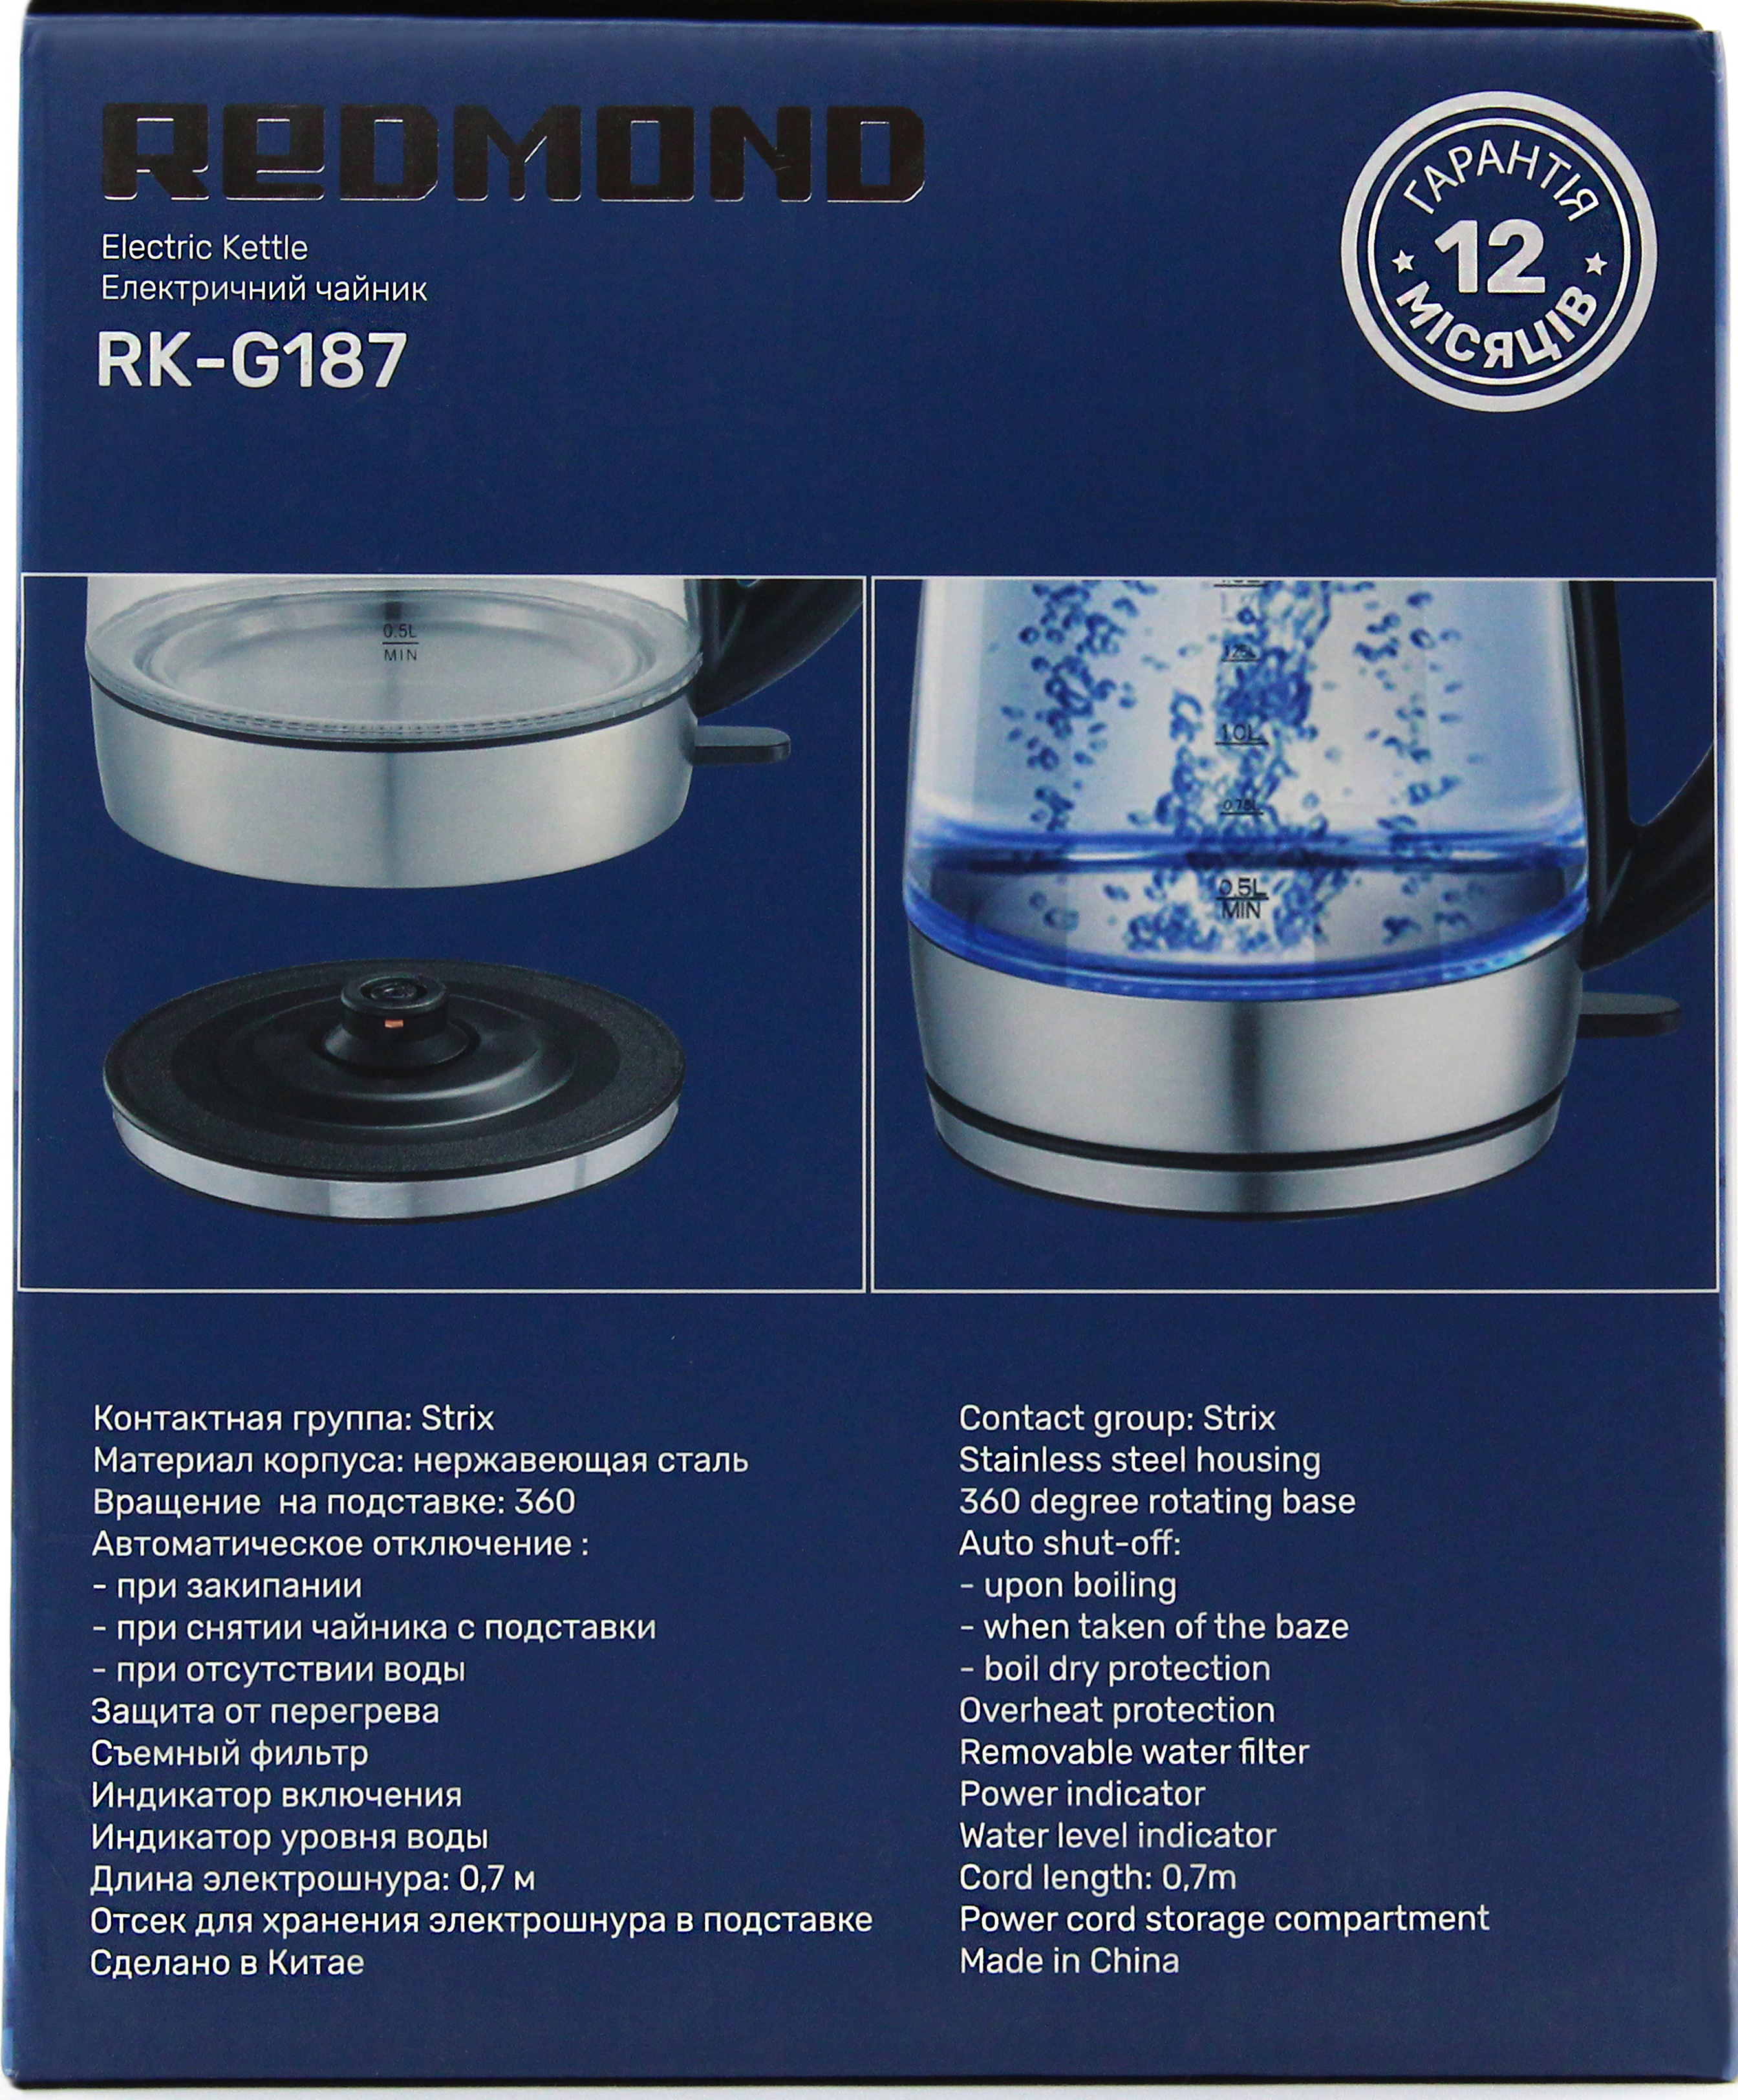 Електрочайник Redmond RK-G187 характеристики - фотографія 7